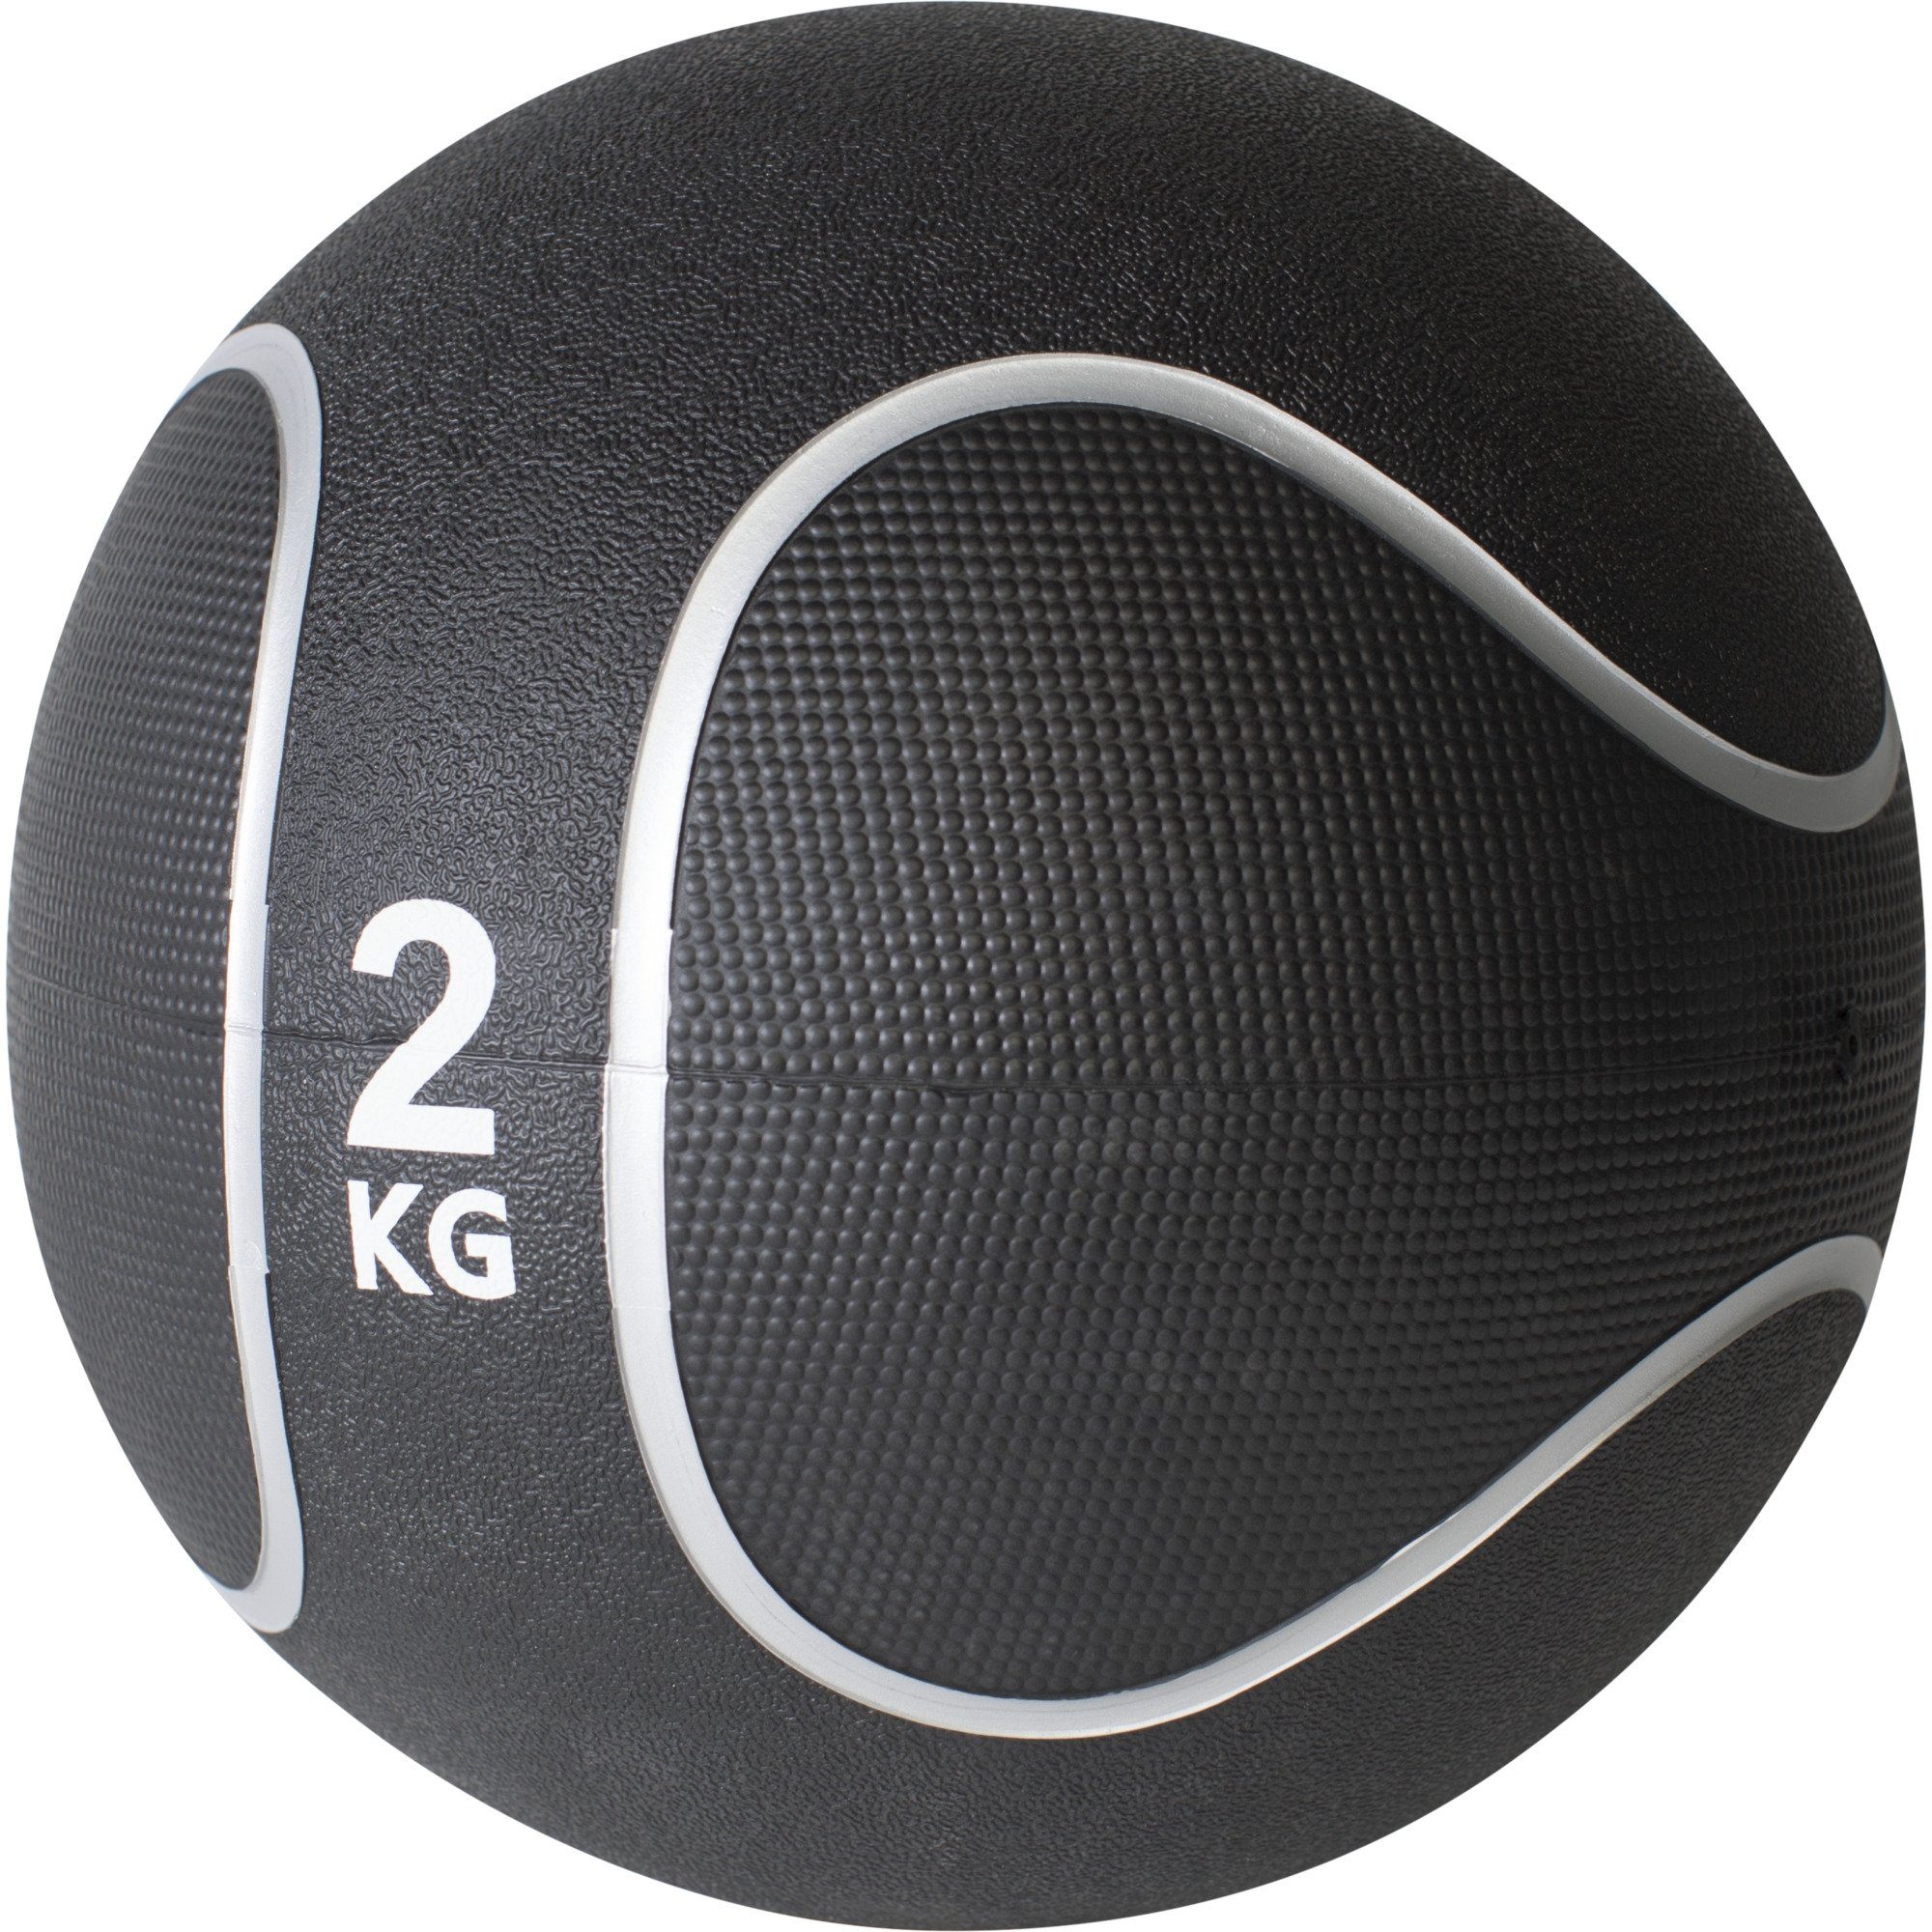 Medizinball aus Fitnessball GORILLA Ø Set, cm, KG 29 Gummi, oder rutschfest, / 2 23 Einzeln SPORTS